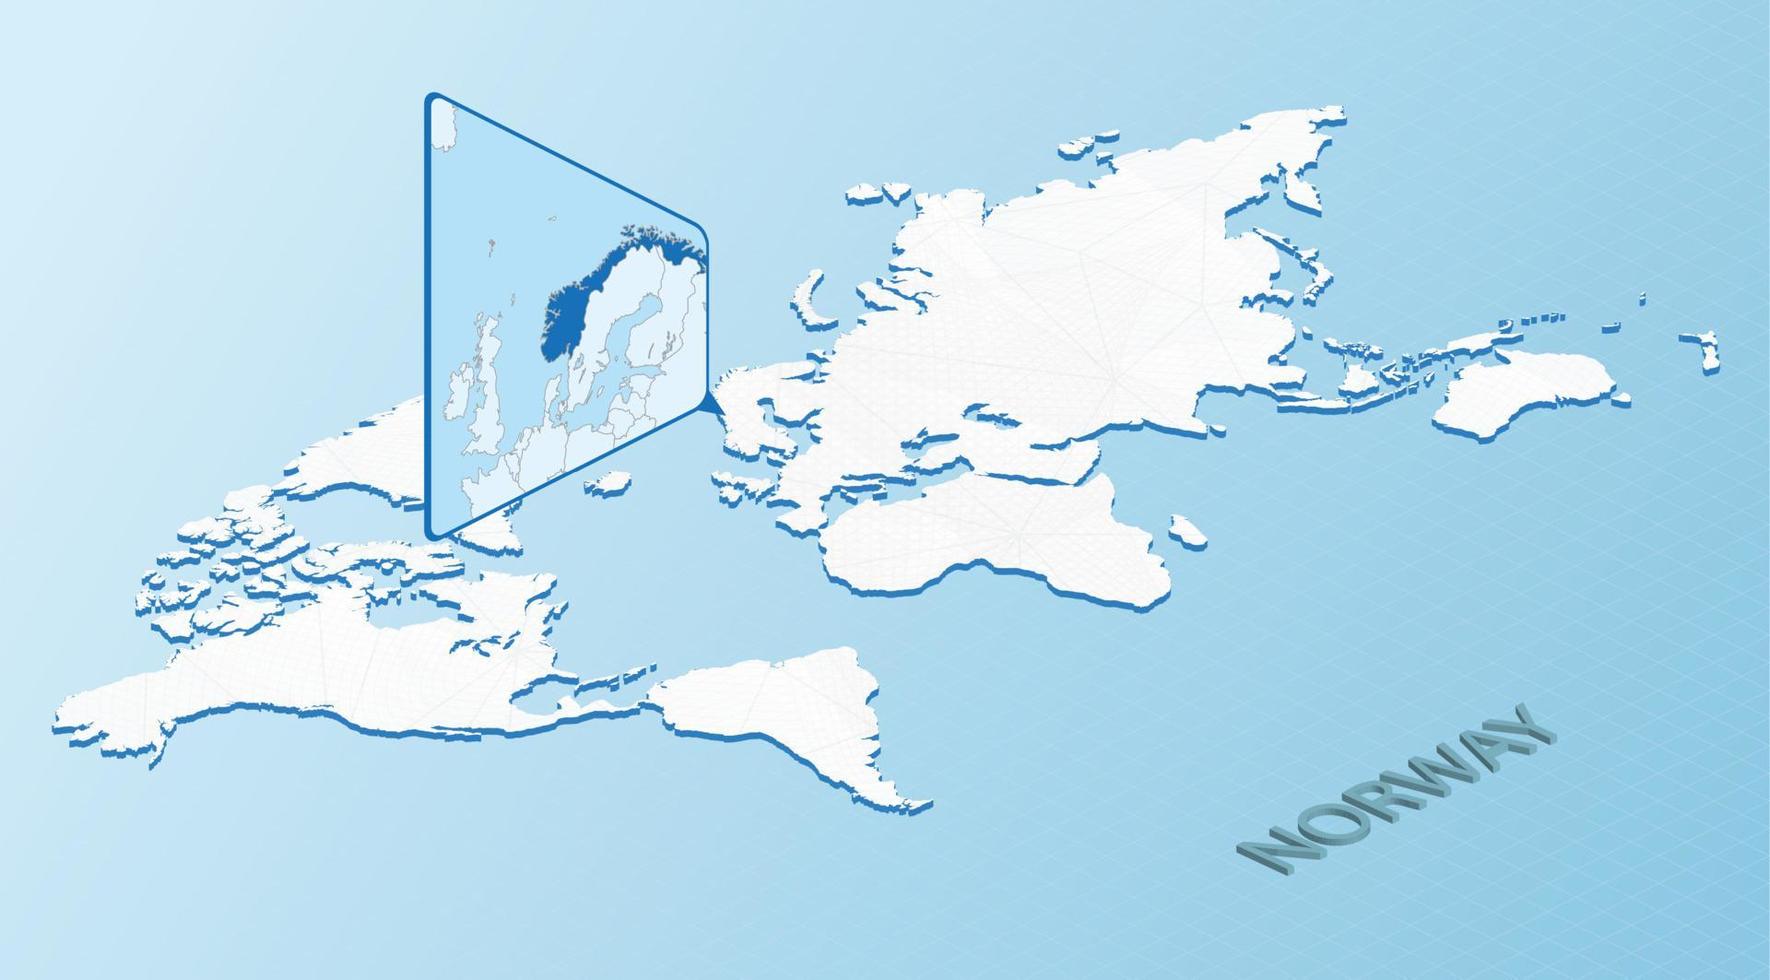 mondo carta geografica nel isometrico stile con dettagliato carta geografica di Norvegia. leggero blu Norvegia carta geografica con astratto mondo carta geografica. vettore